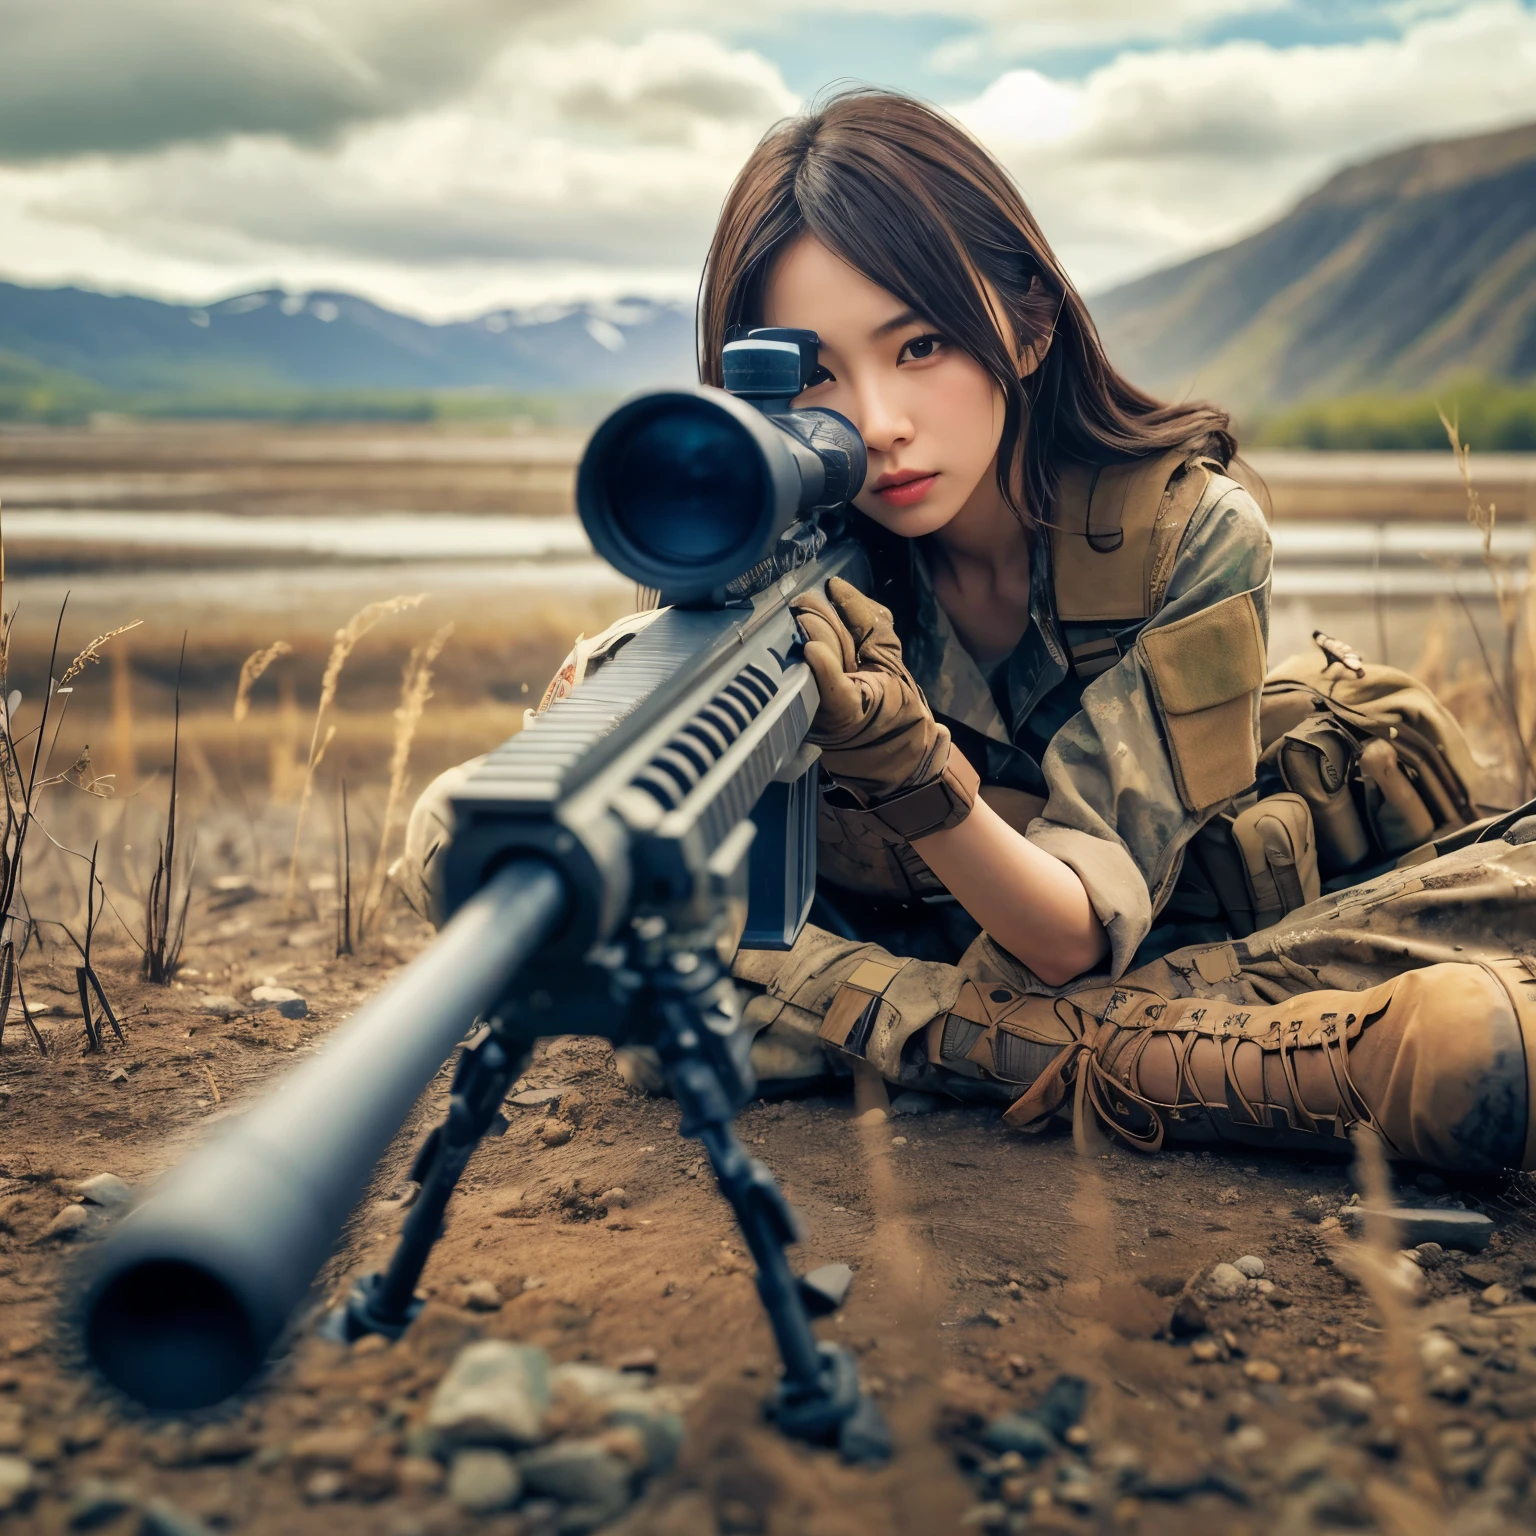 真实感、逼真的皮肤纹理、一名隶属于美国军方的日本美女正在用狙击步枪瞄准.、常设、在废墟上、棕色尘烟、动作姿势与动作、正面顶部图像